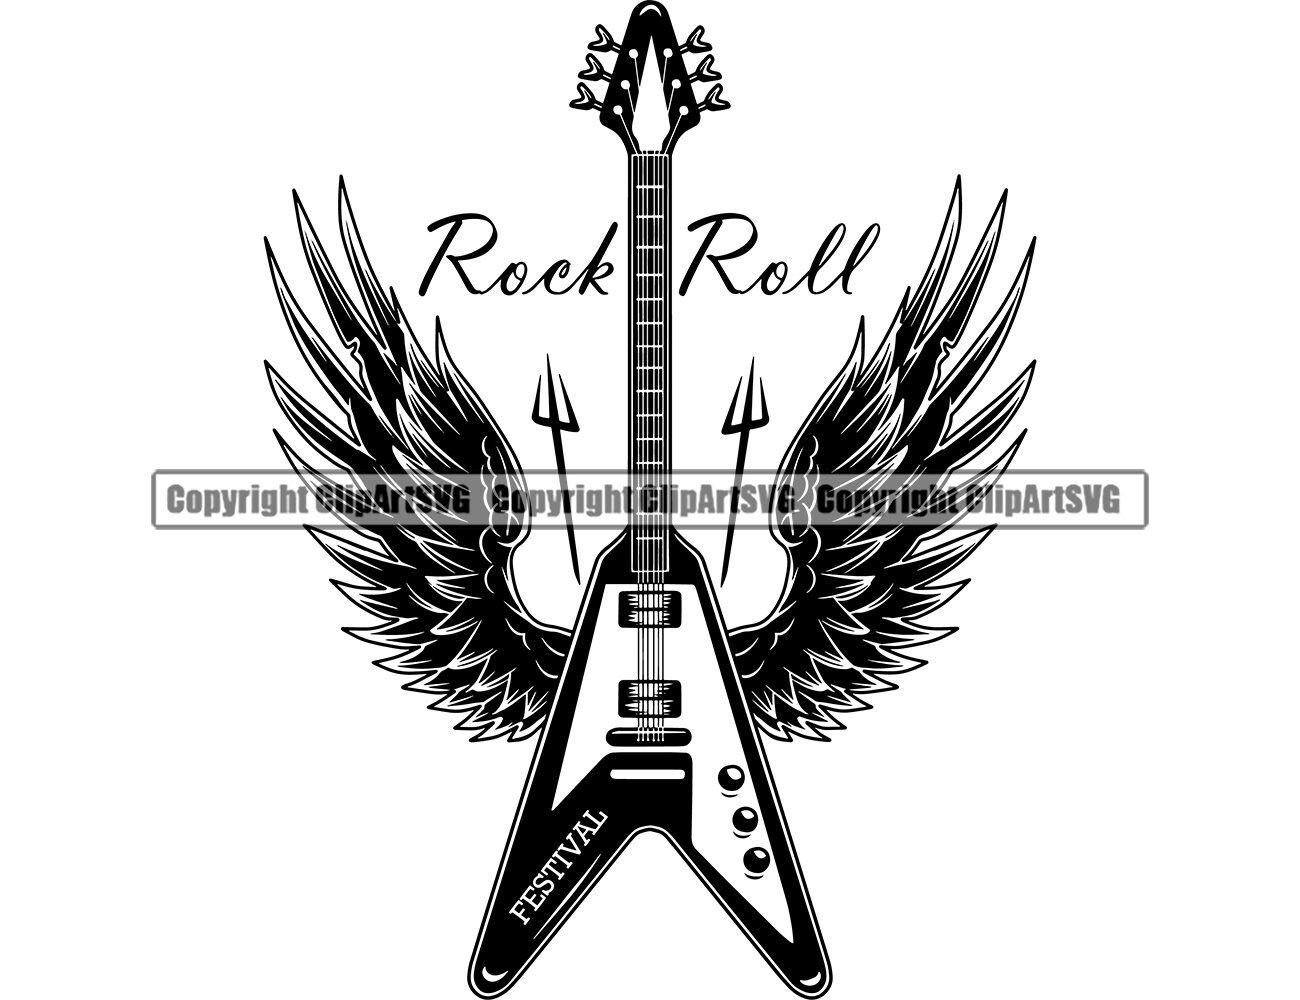 Rock N Roll Electric Guitar Speaker Wings Heavy Metal Music 